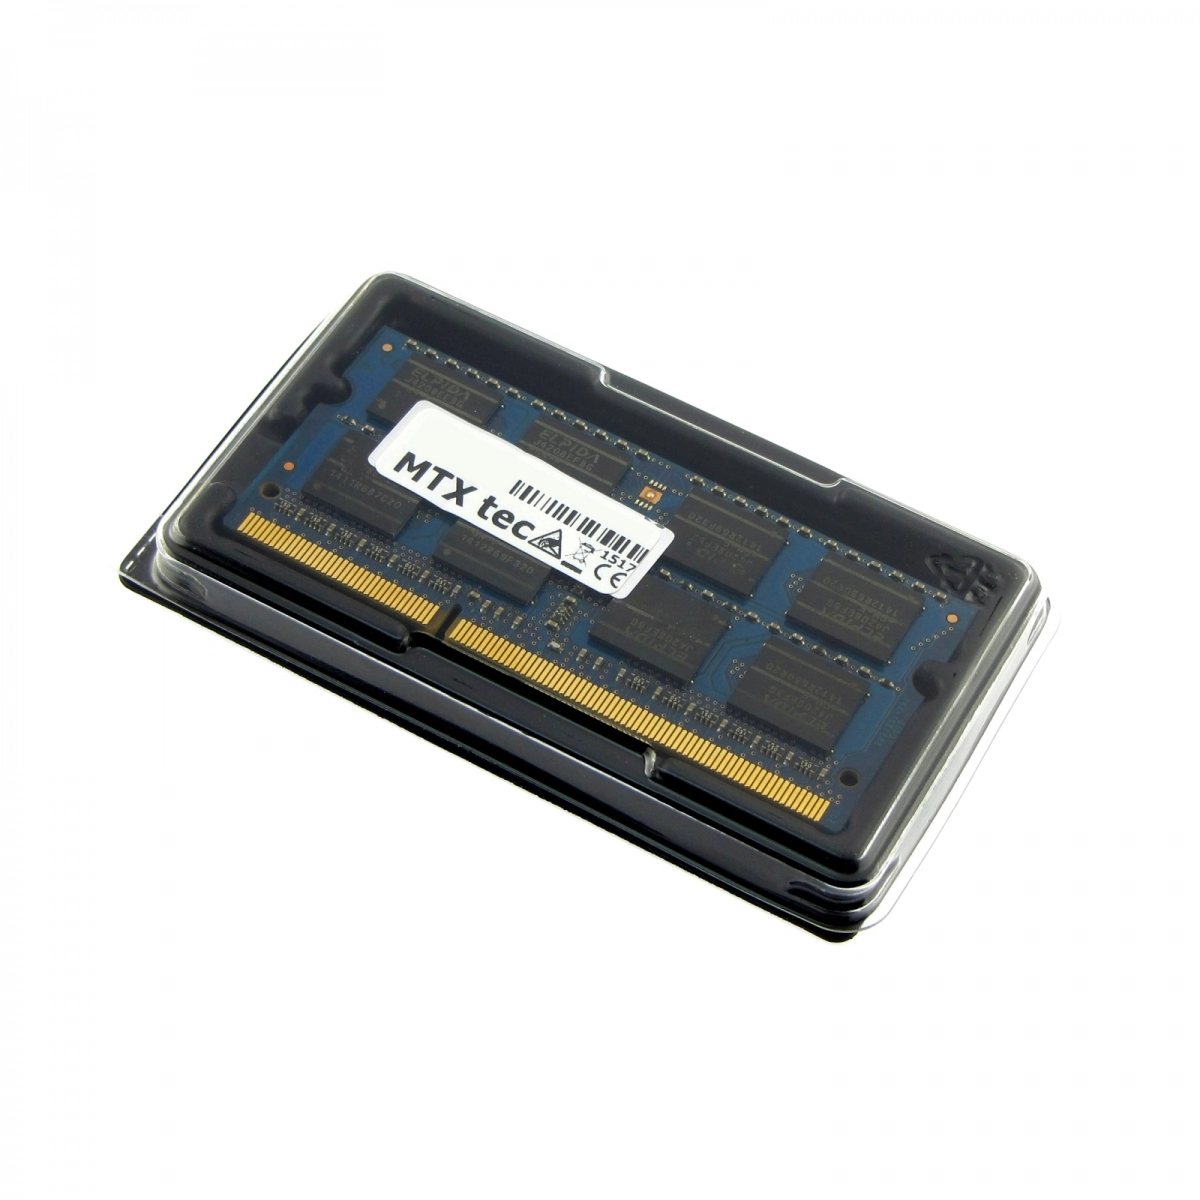 MTXtec Arbeitsspeicher 4 GB RAM für MSI Megabook CR61